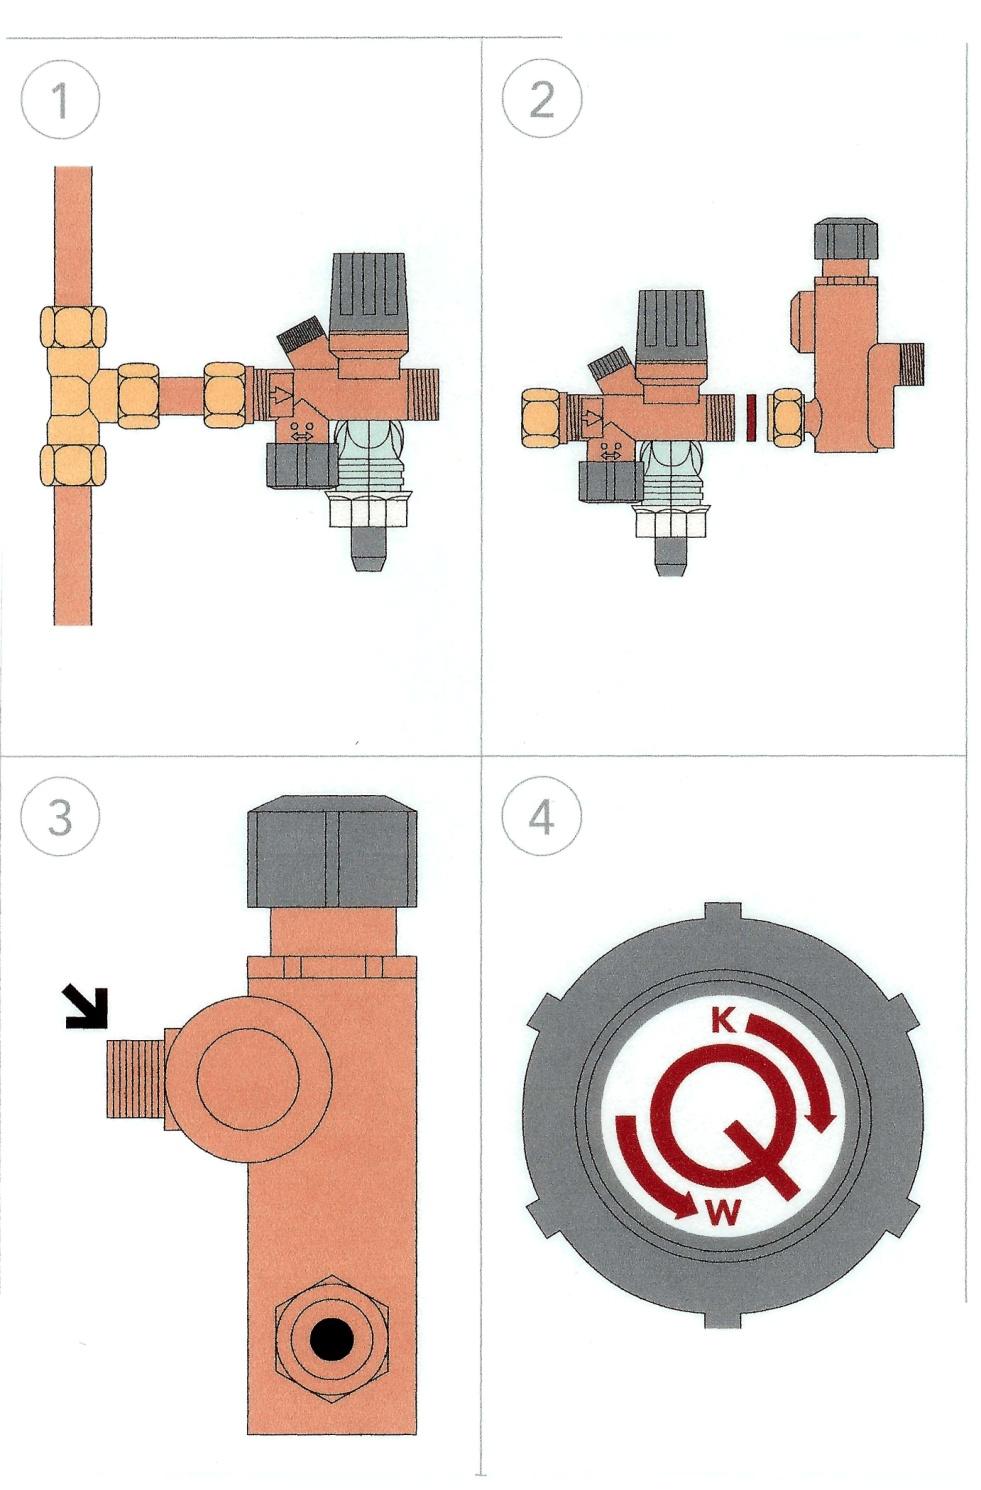 C Wasseranschluß HINWEIS: Der Quooker funktioniert mit Wasserleitungsdruck und muss stets mit der mitgelieferten Einlaufkombination montiert werden.